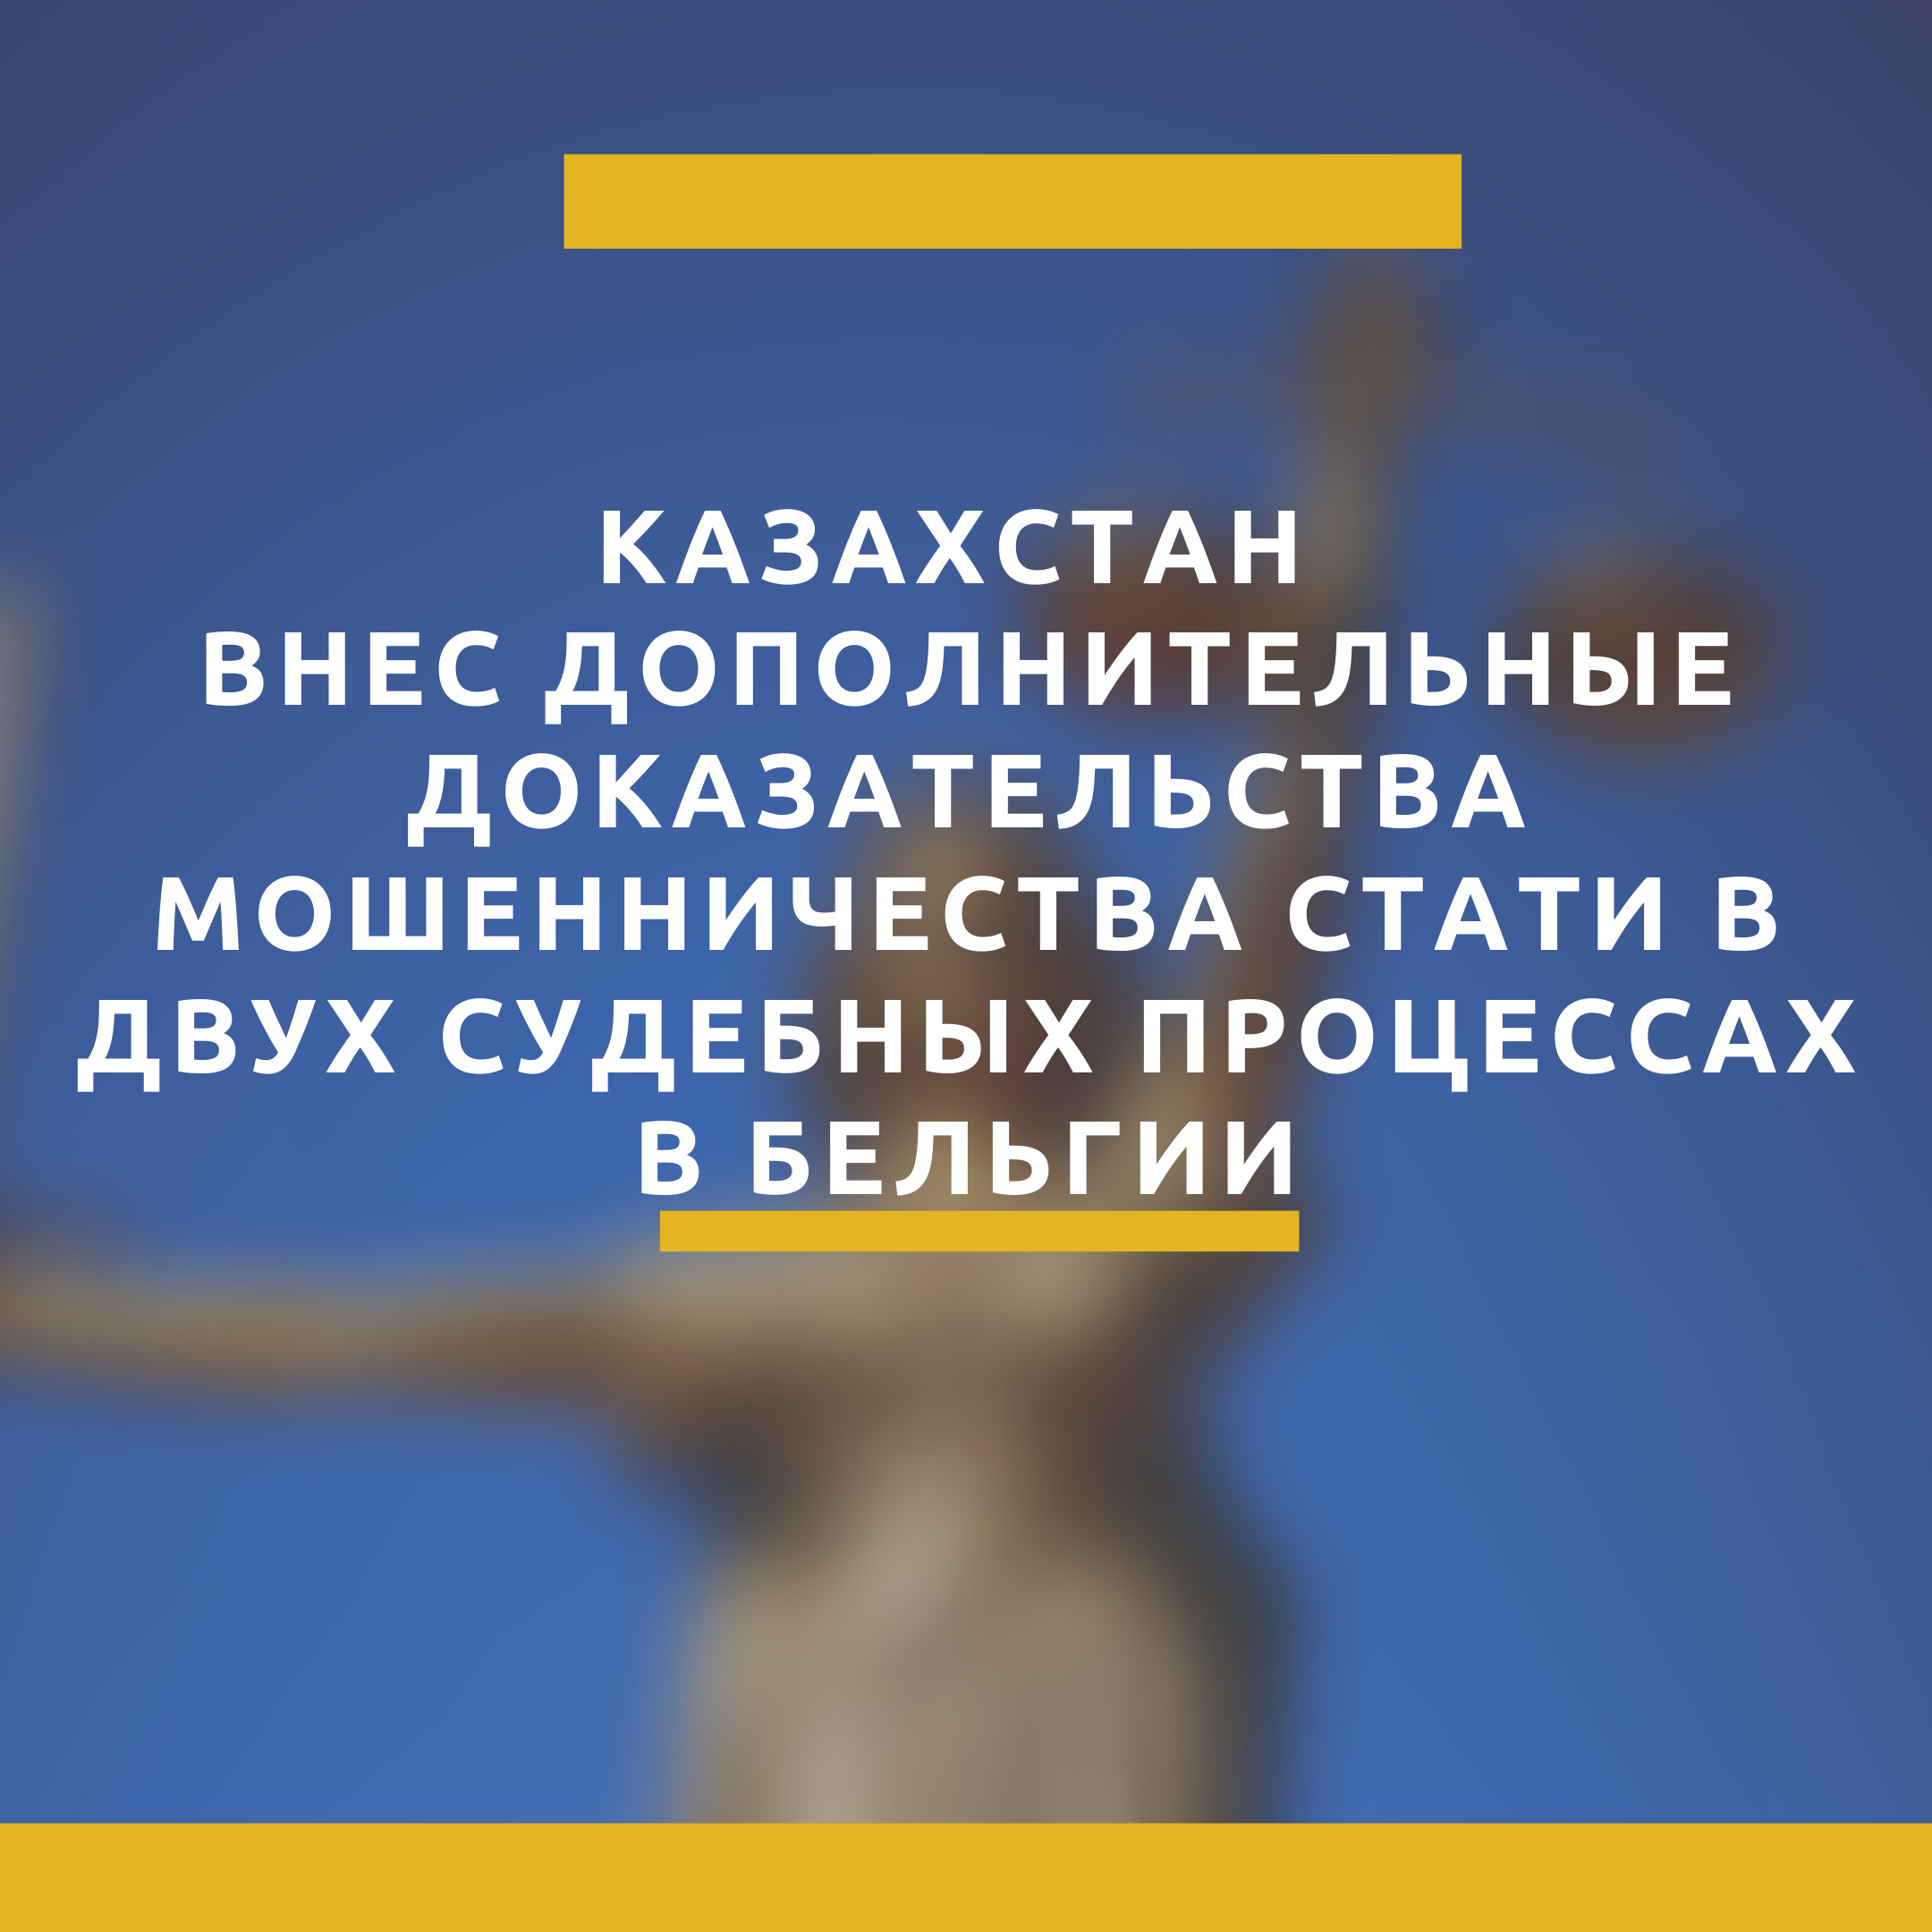 Казахстан внес дополнительные доказательства мошенничества Стати в двух судебных процессах в Бельгии